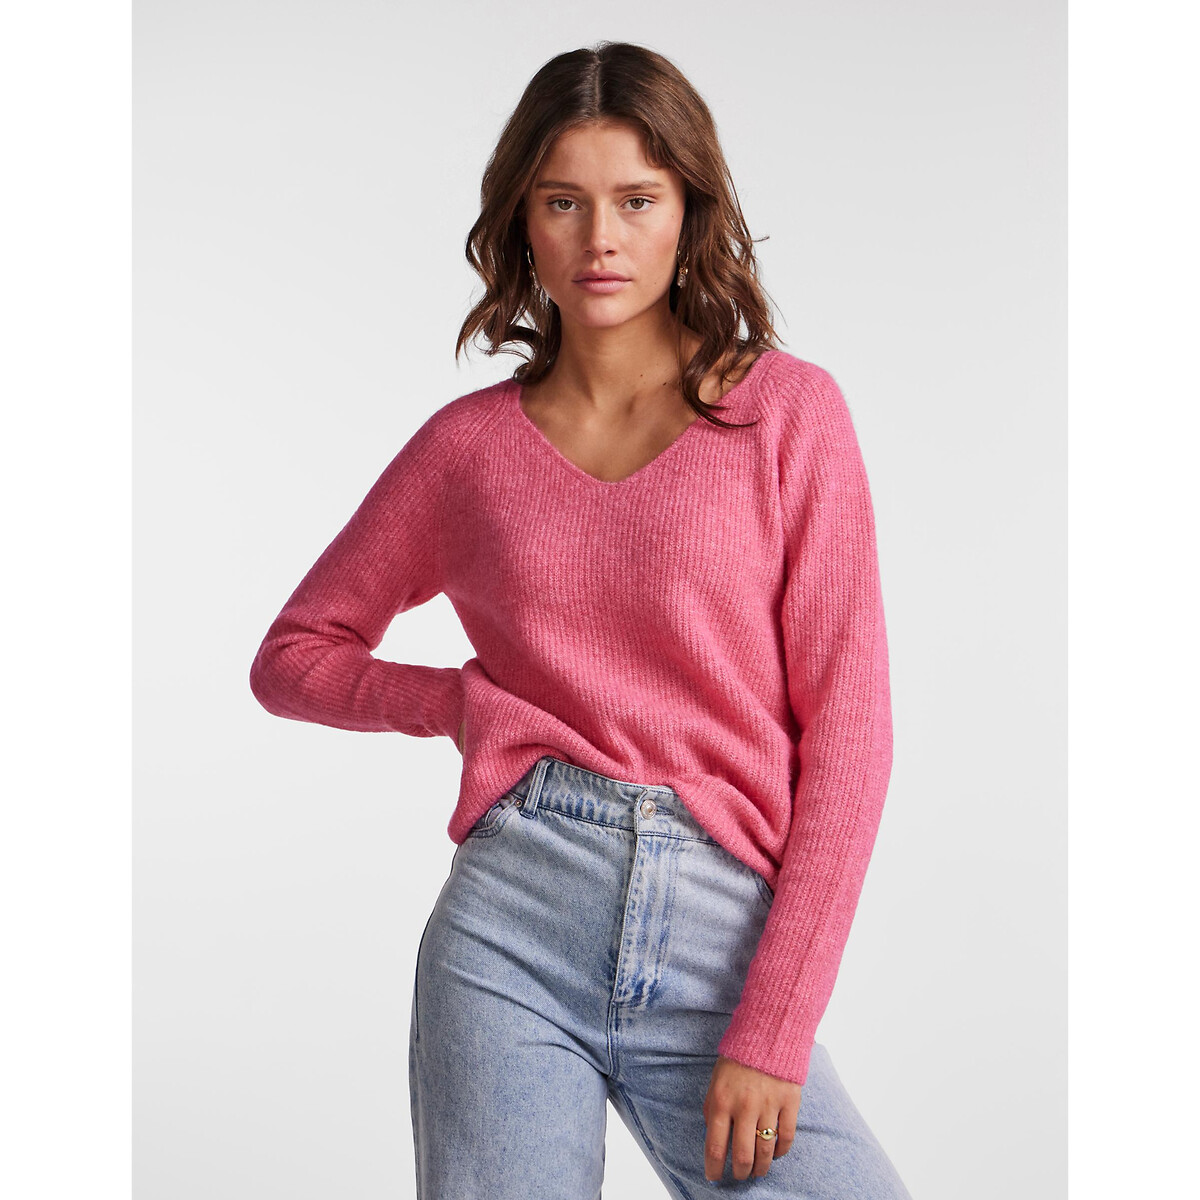 Пуловер с V-образным вырезом из тонкого трикотажа XL розовый пуловер с v образным вырезом из тонкого трикотажа 46 48 fr 52 54 rus розовый